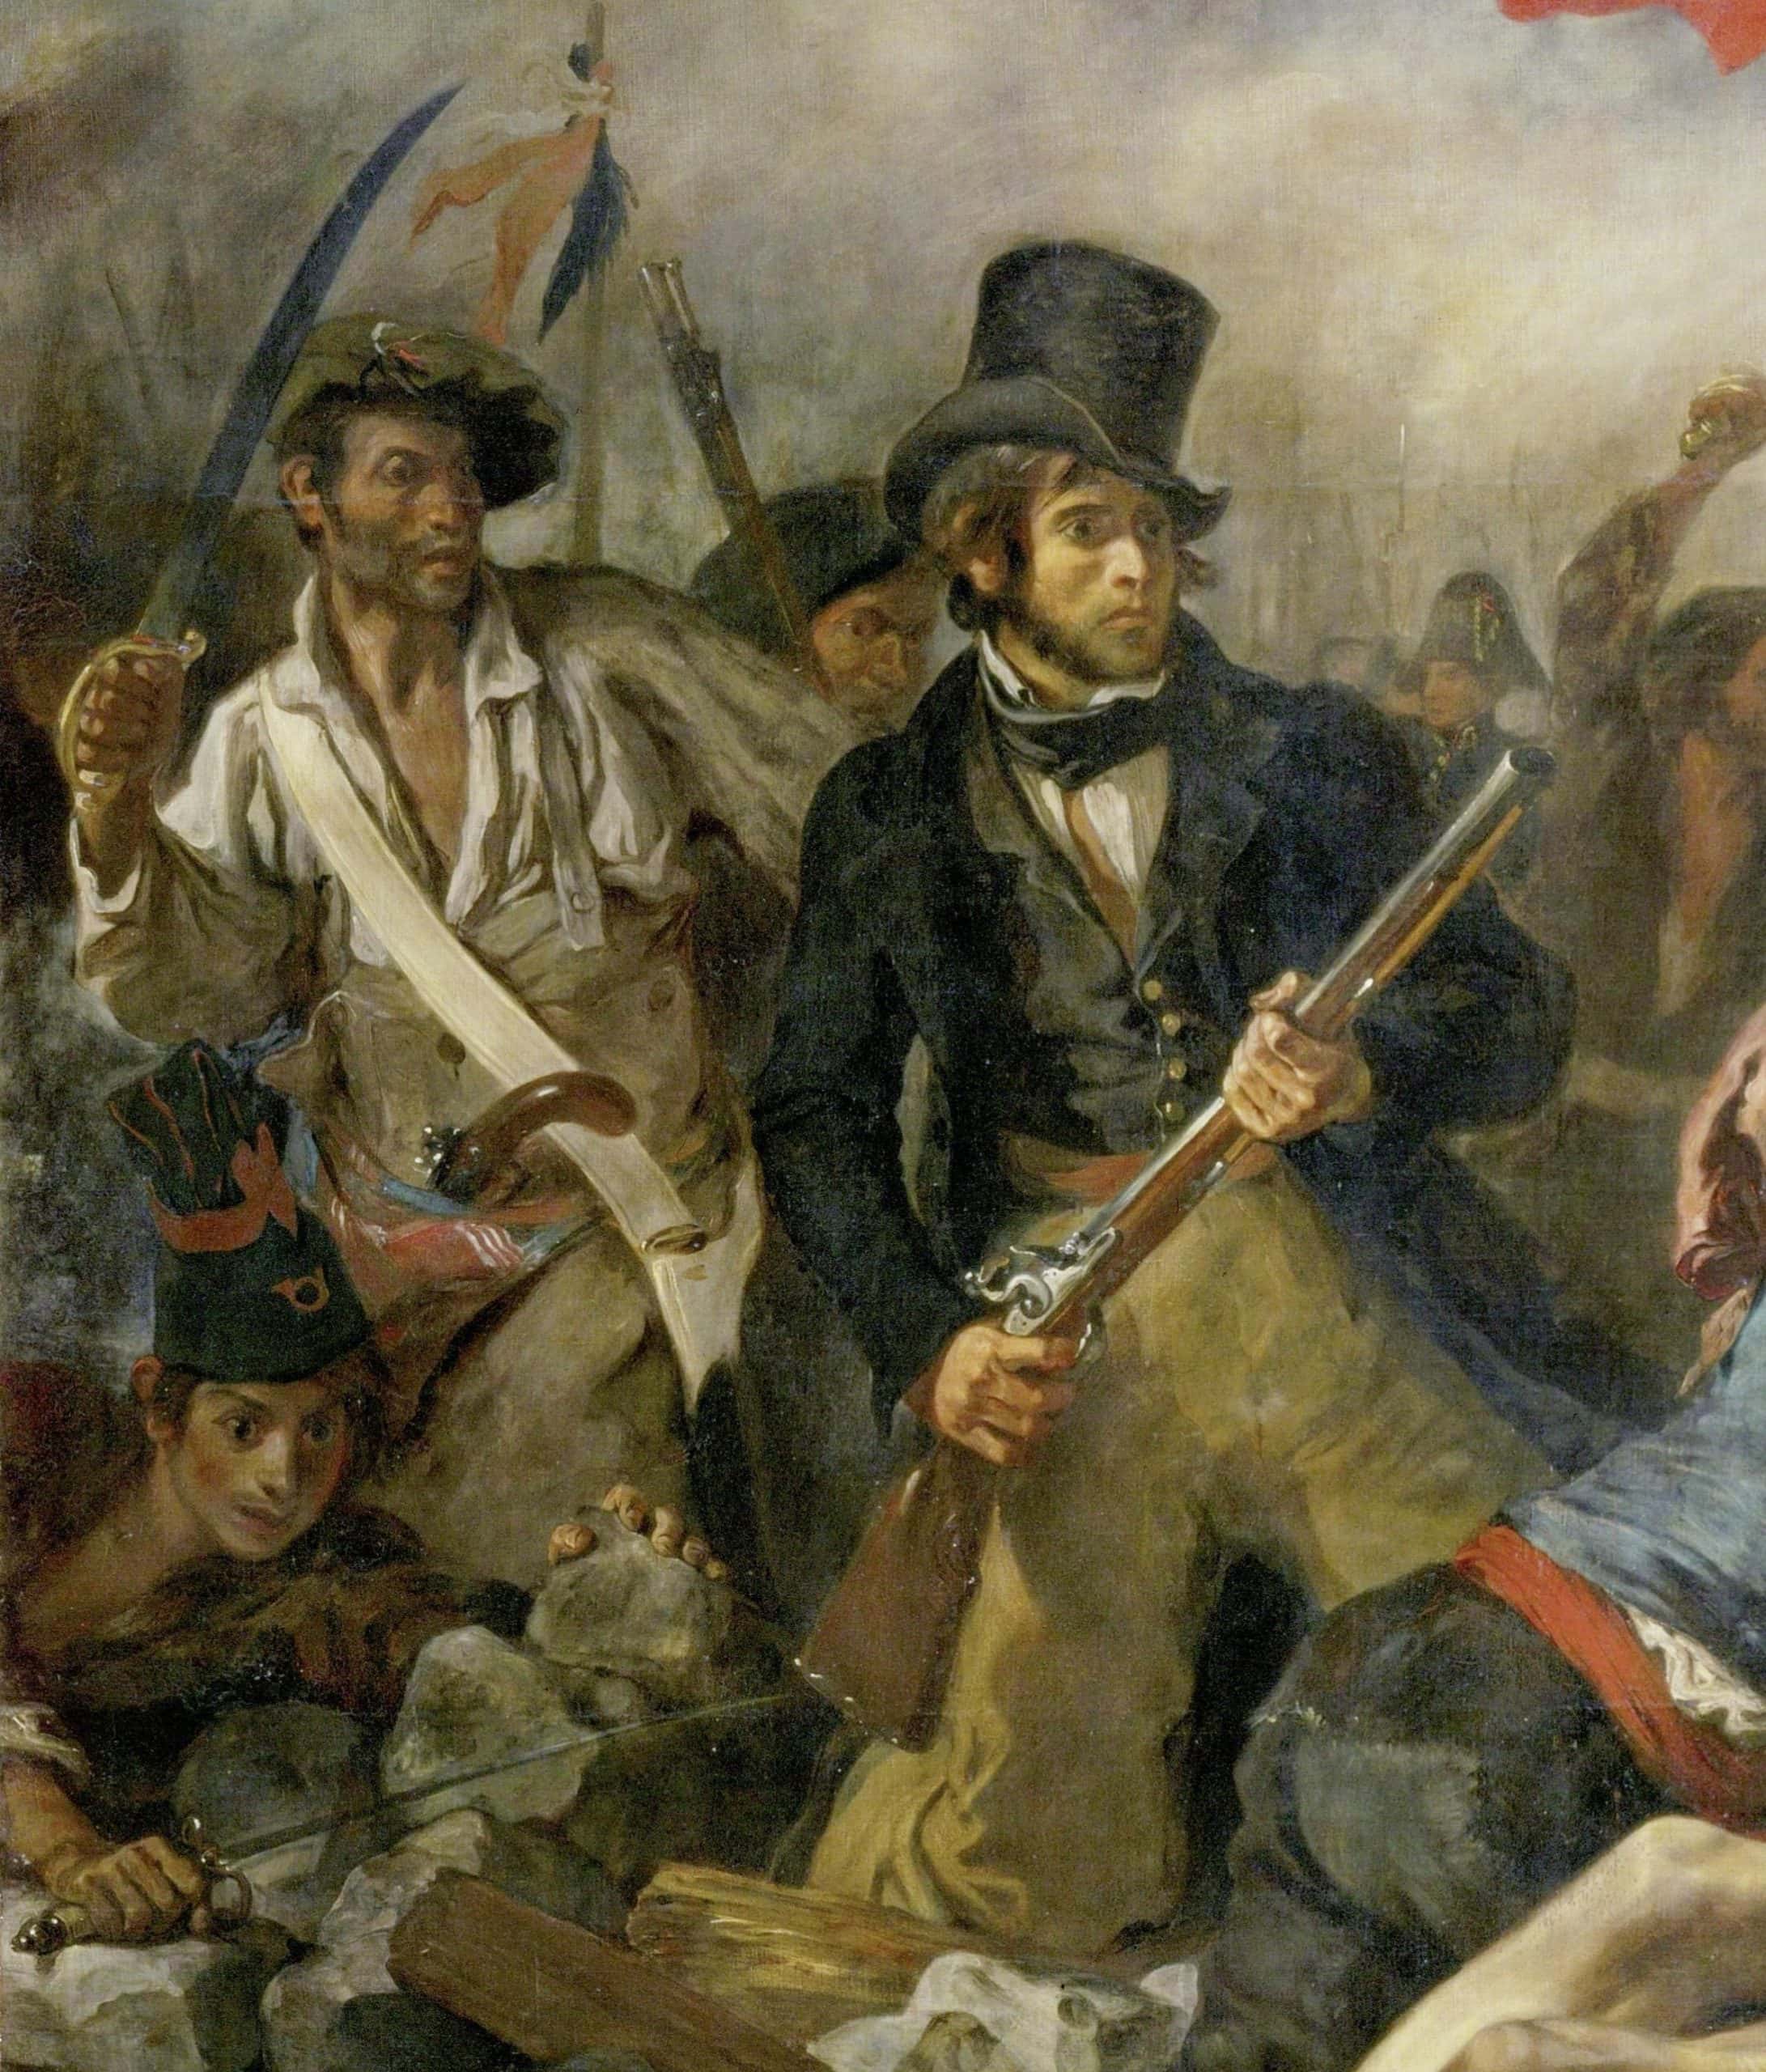 Detalle de la pintura de la Revolución Francesa